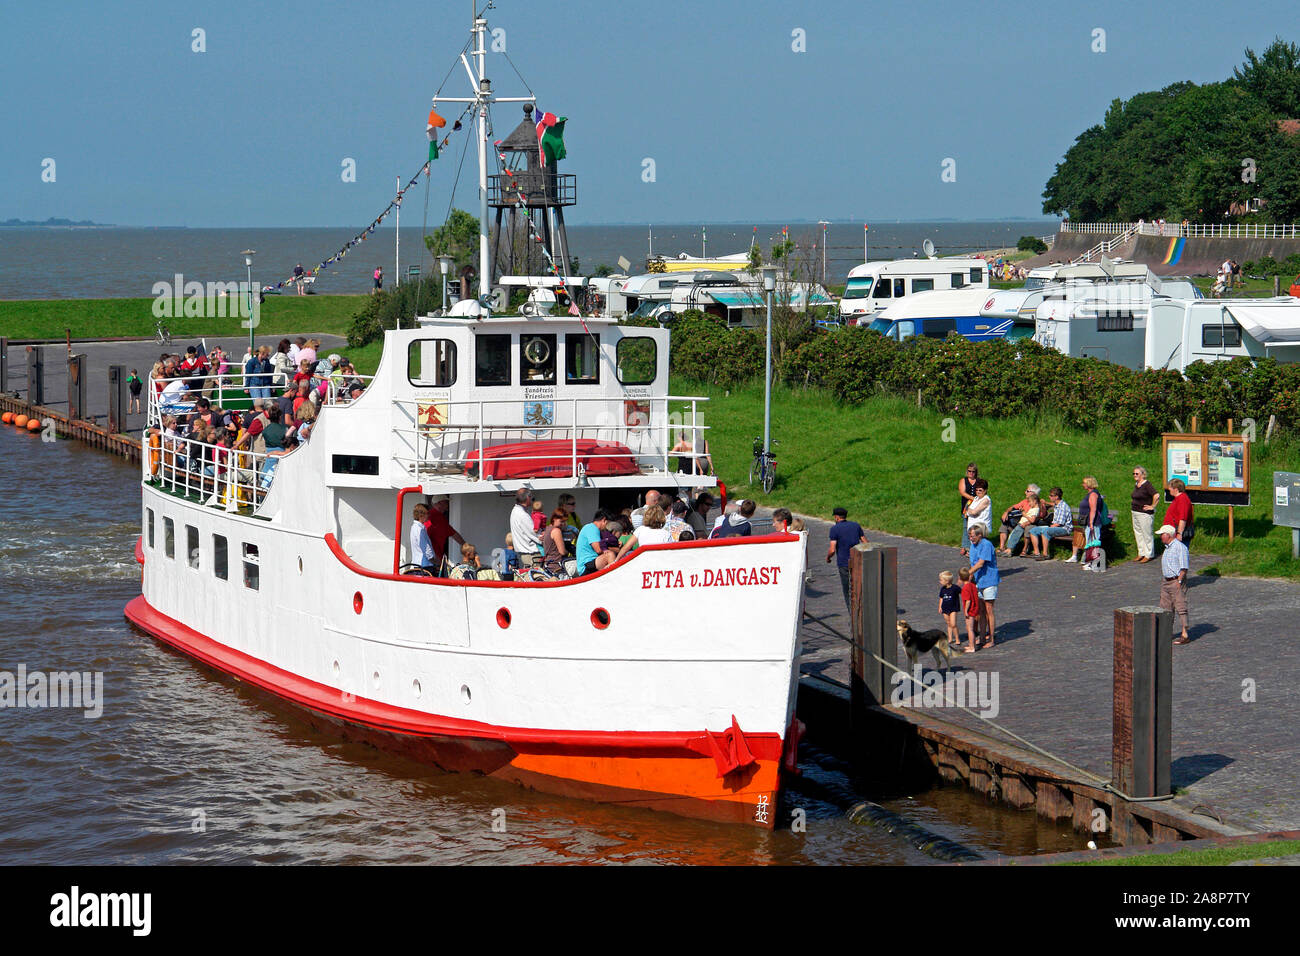 Hafen von Dangast mit Schiff Etta von Dangast, Nordseebad Dangast, Niedersachsen, Jadebusen, Friesland, Stock Photo